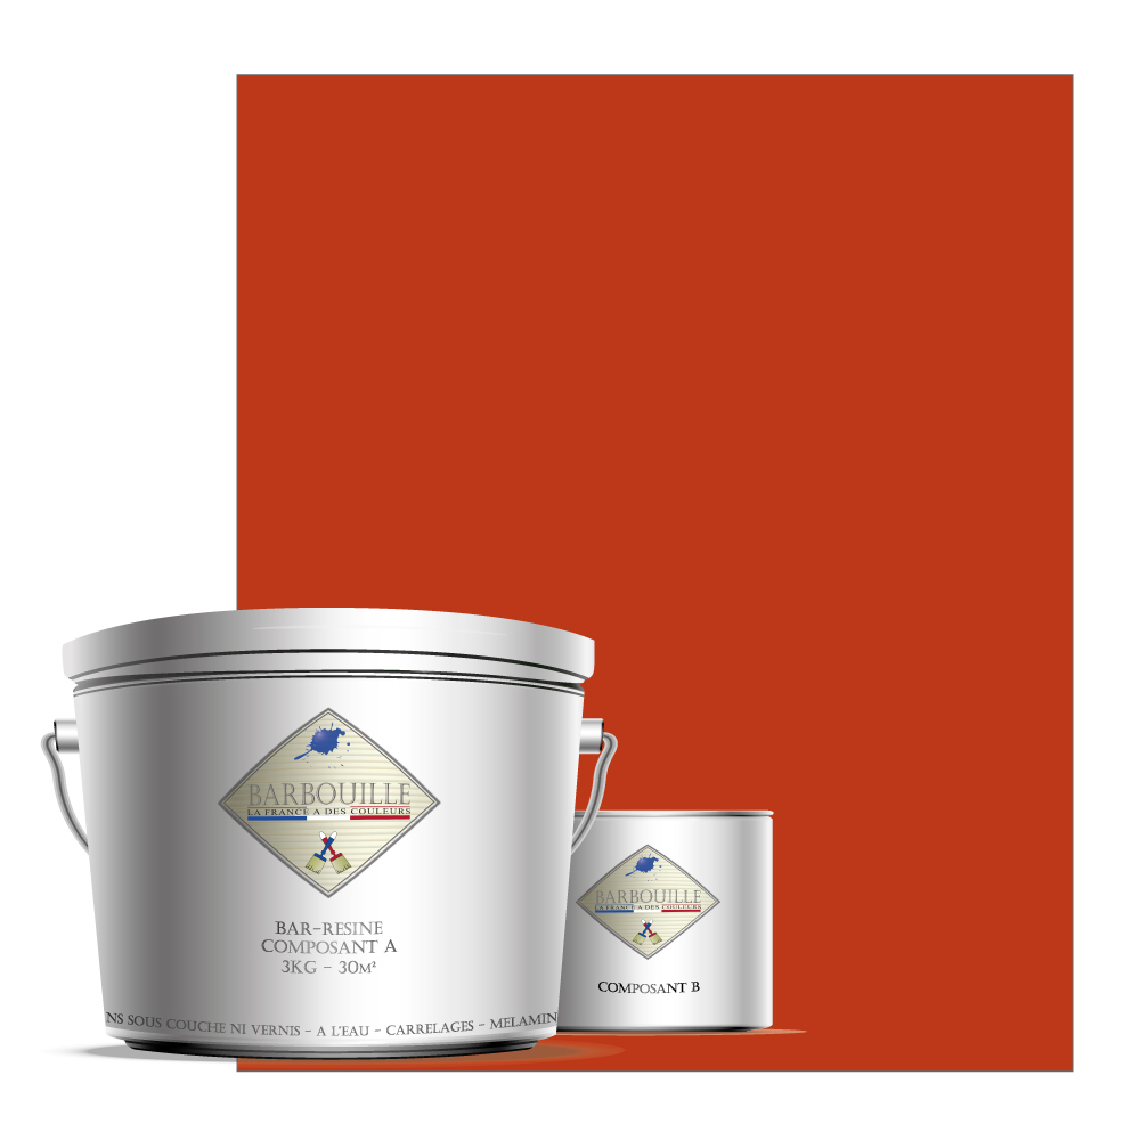 Barbouille - Peinture/résine époxy bi-composants, en phase aqueuse pour carrelages, faiences, stratifiés, PVC, etc… Finition Brillante - Peinture intérieure